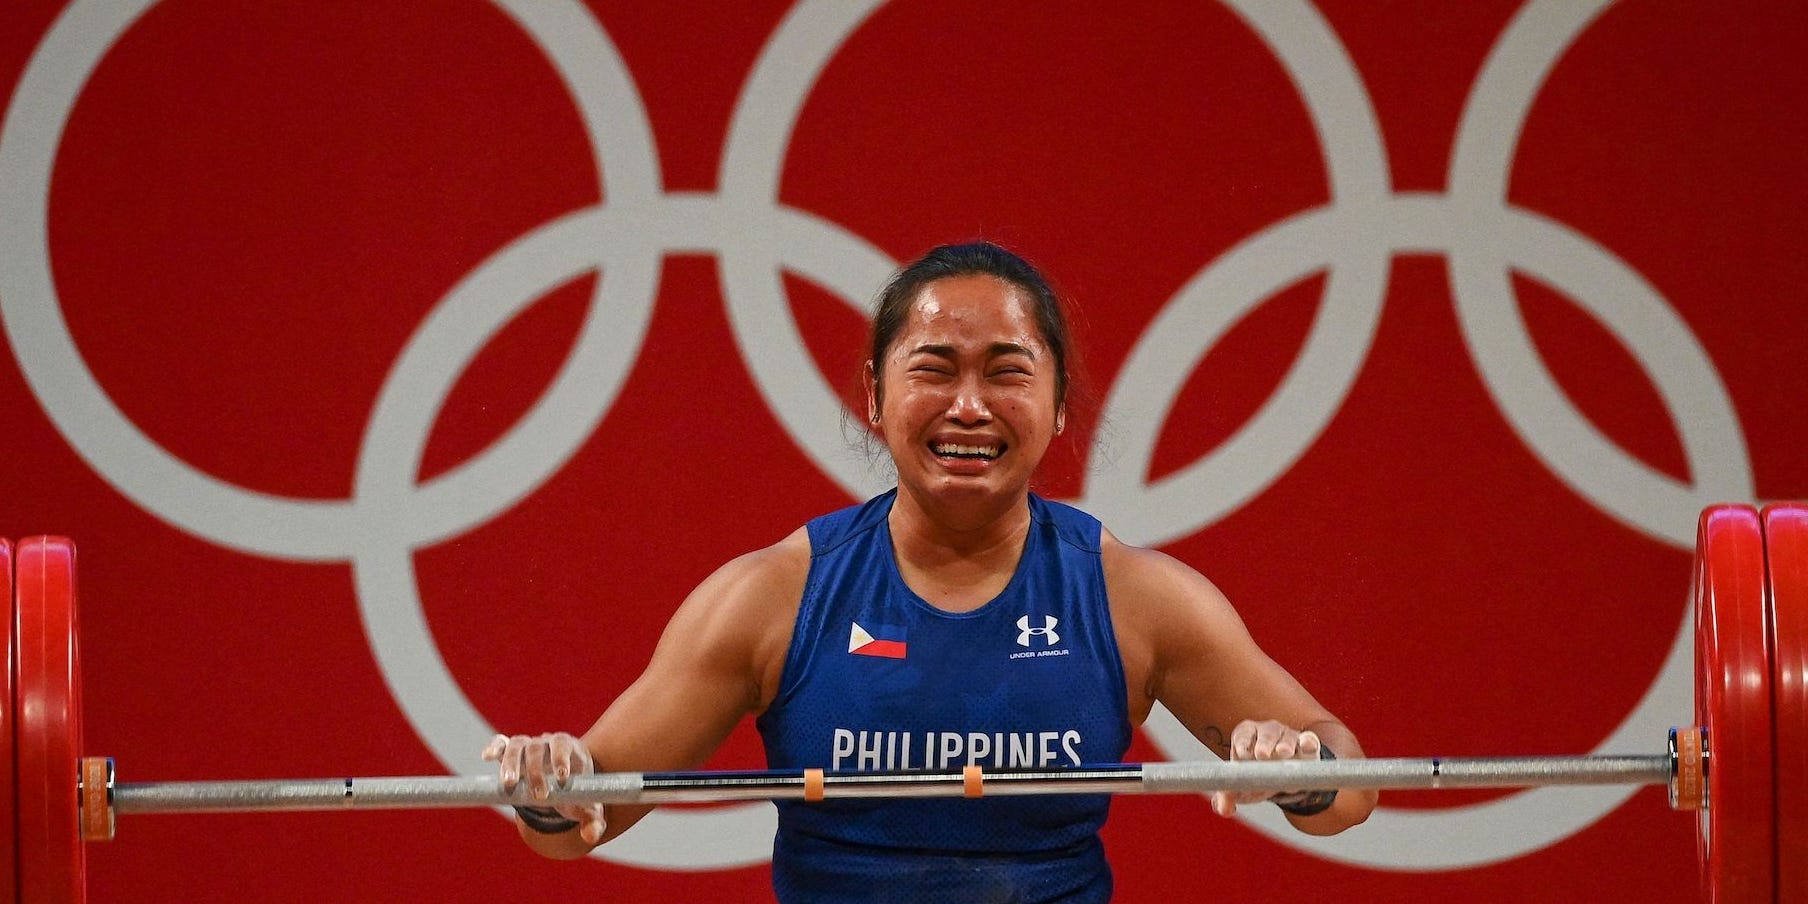 Hidilyn Diaz burst into tears as she won a gold medal.